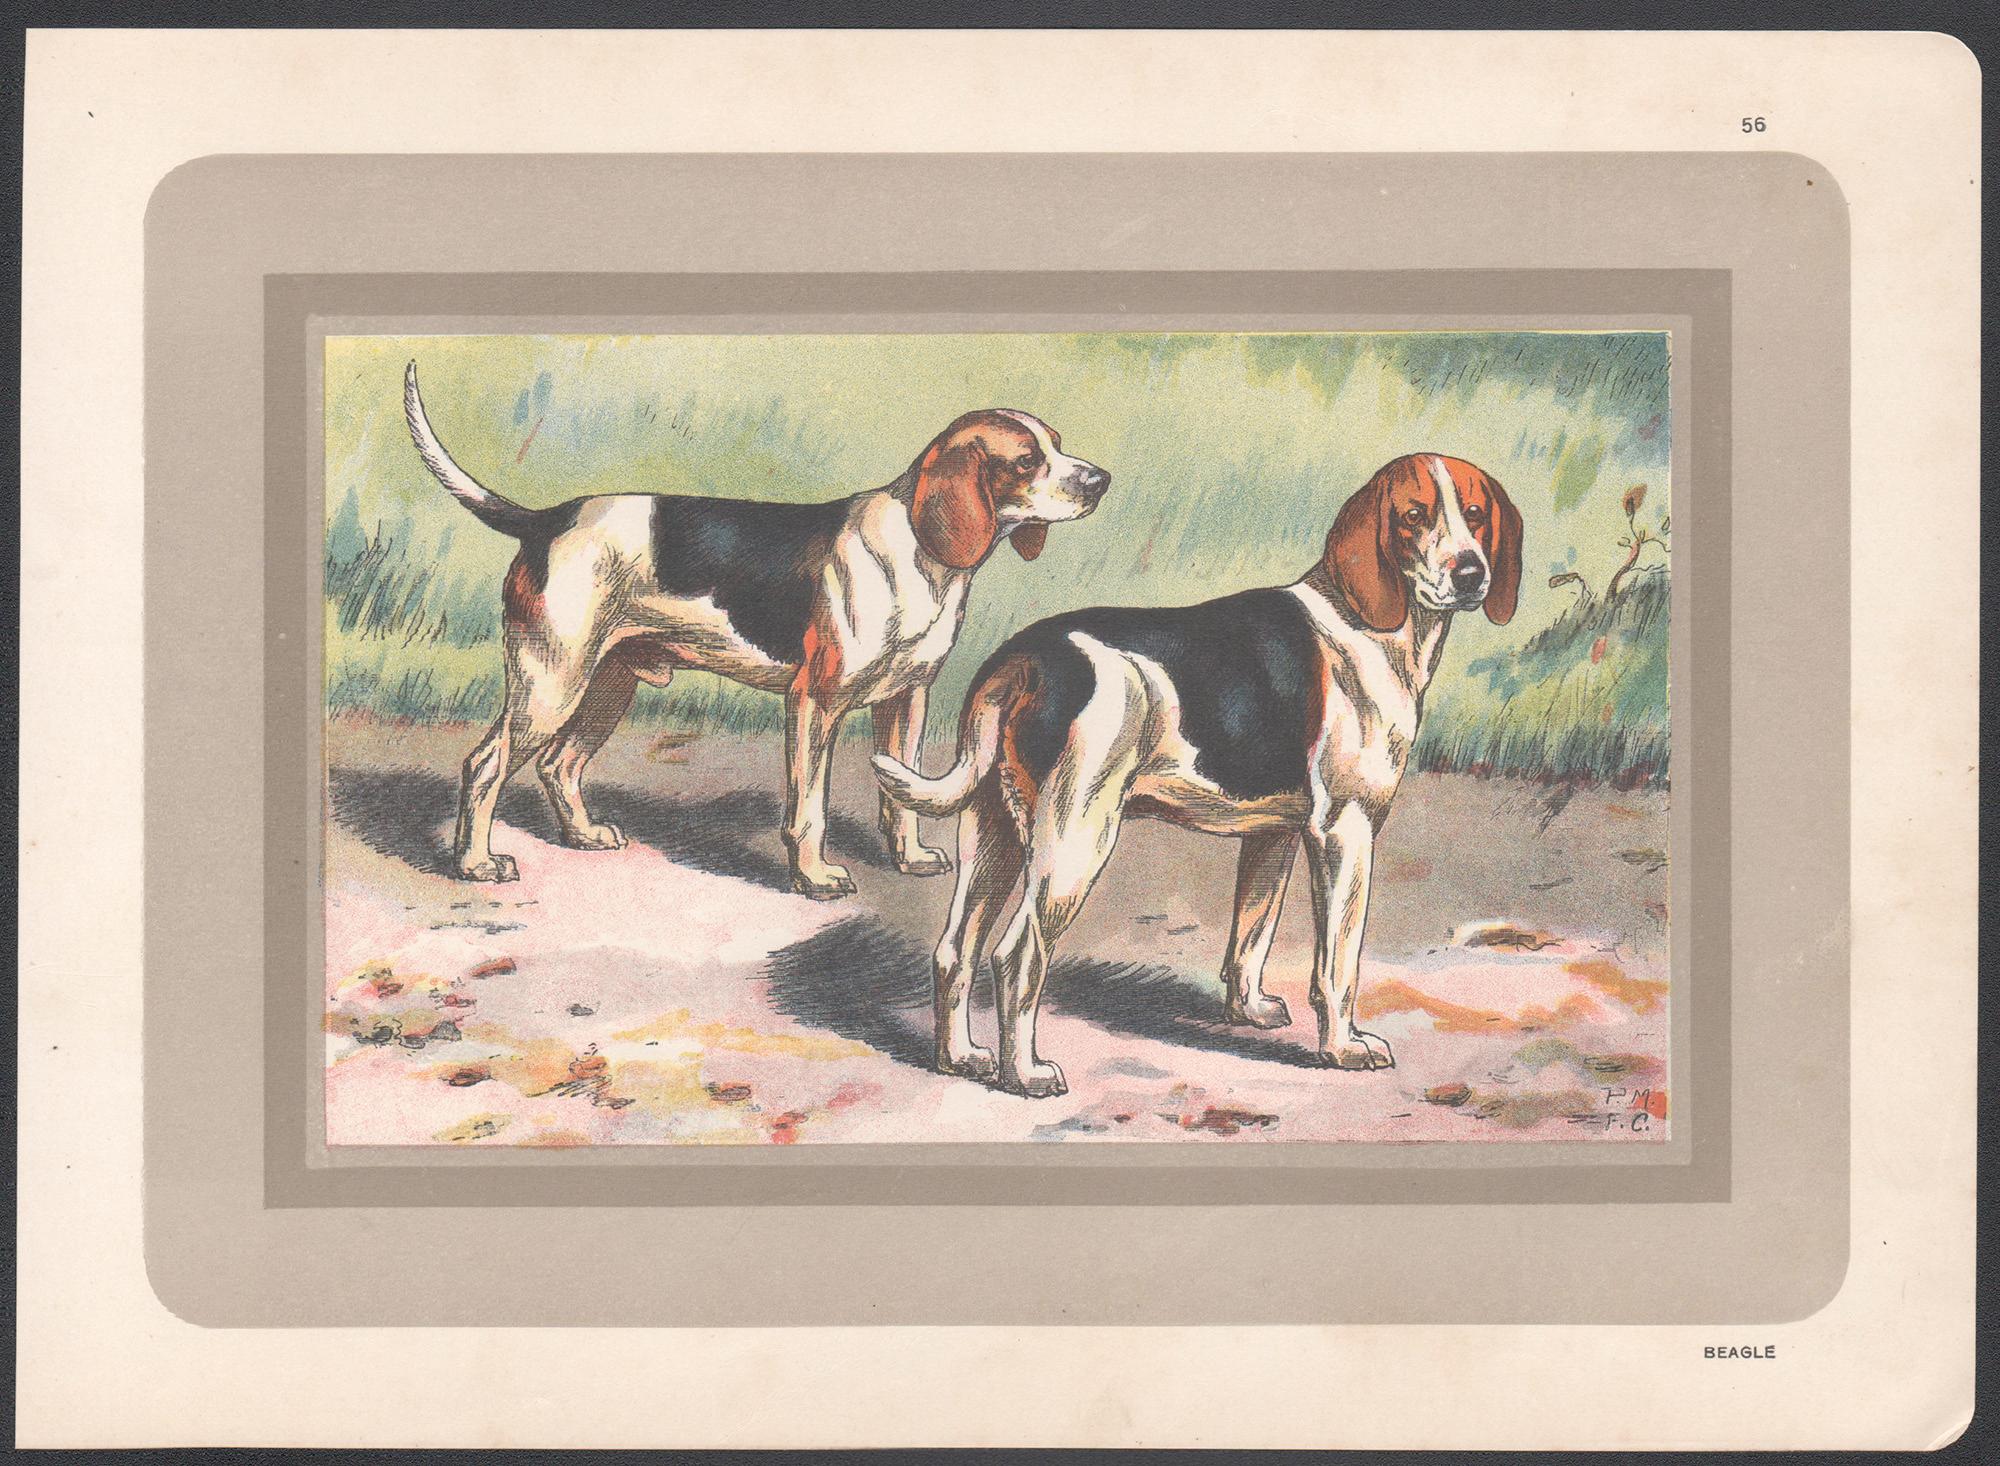 Beagle, impression chromolithographie d'un chien de chasse français, 1931 - Print de F Castellan